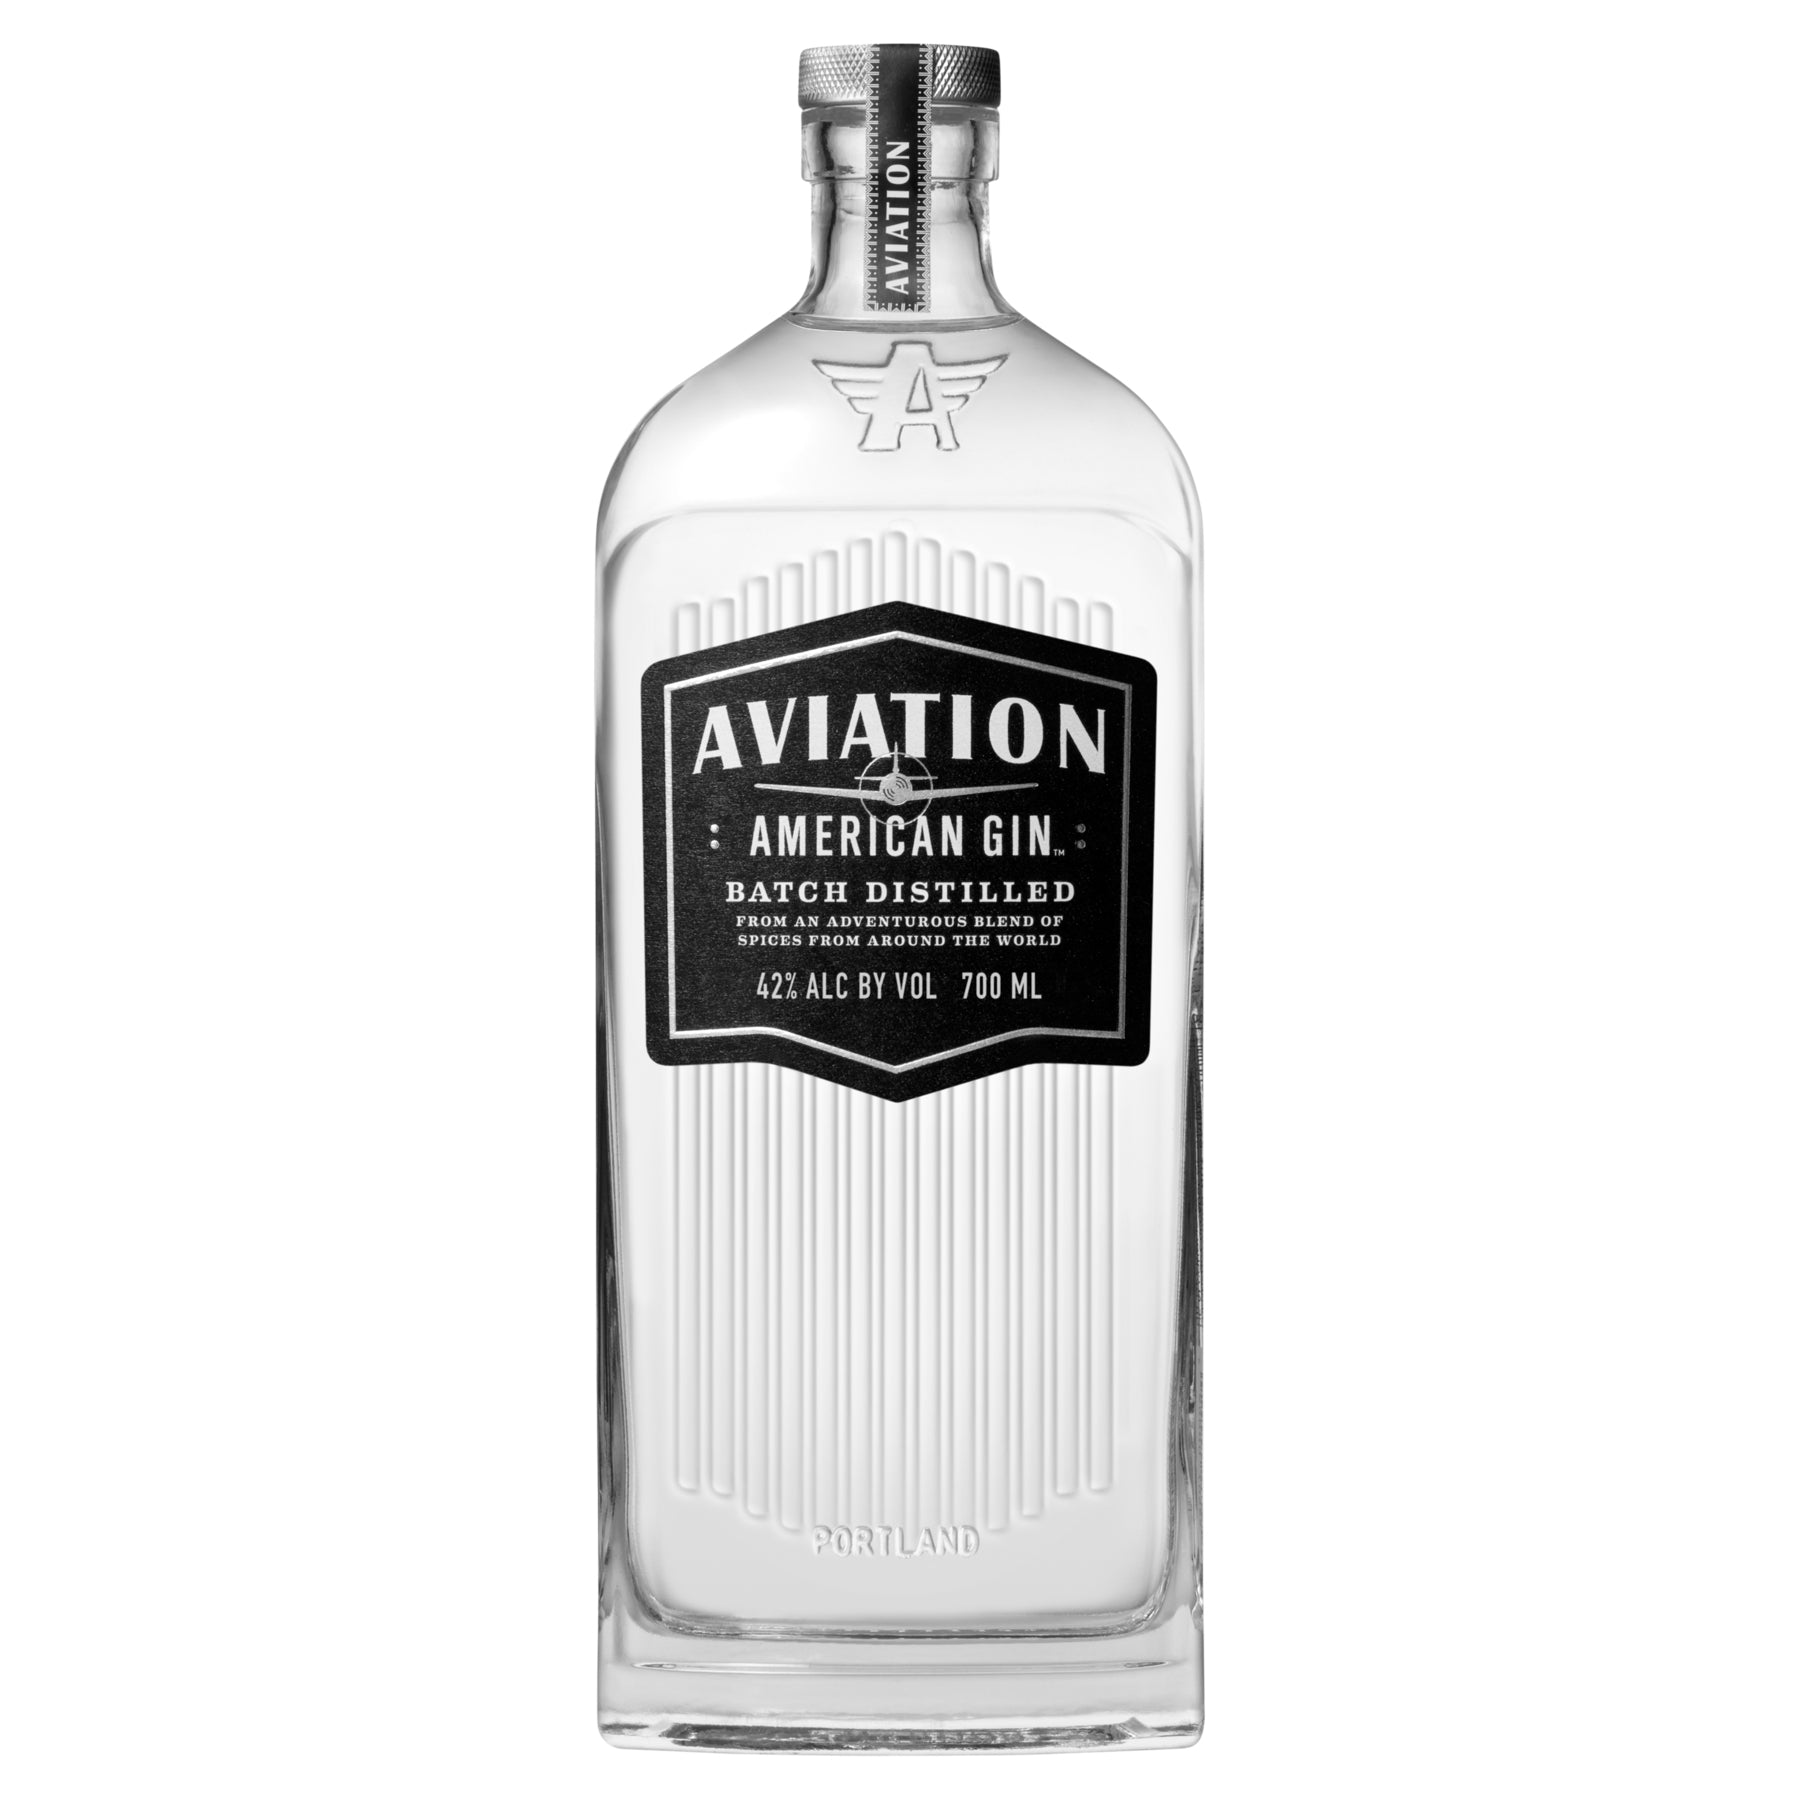 Aviation Gin 700ml